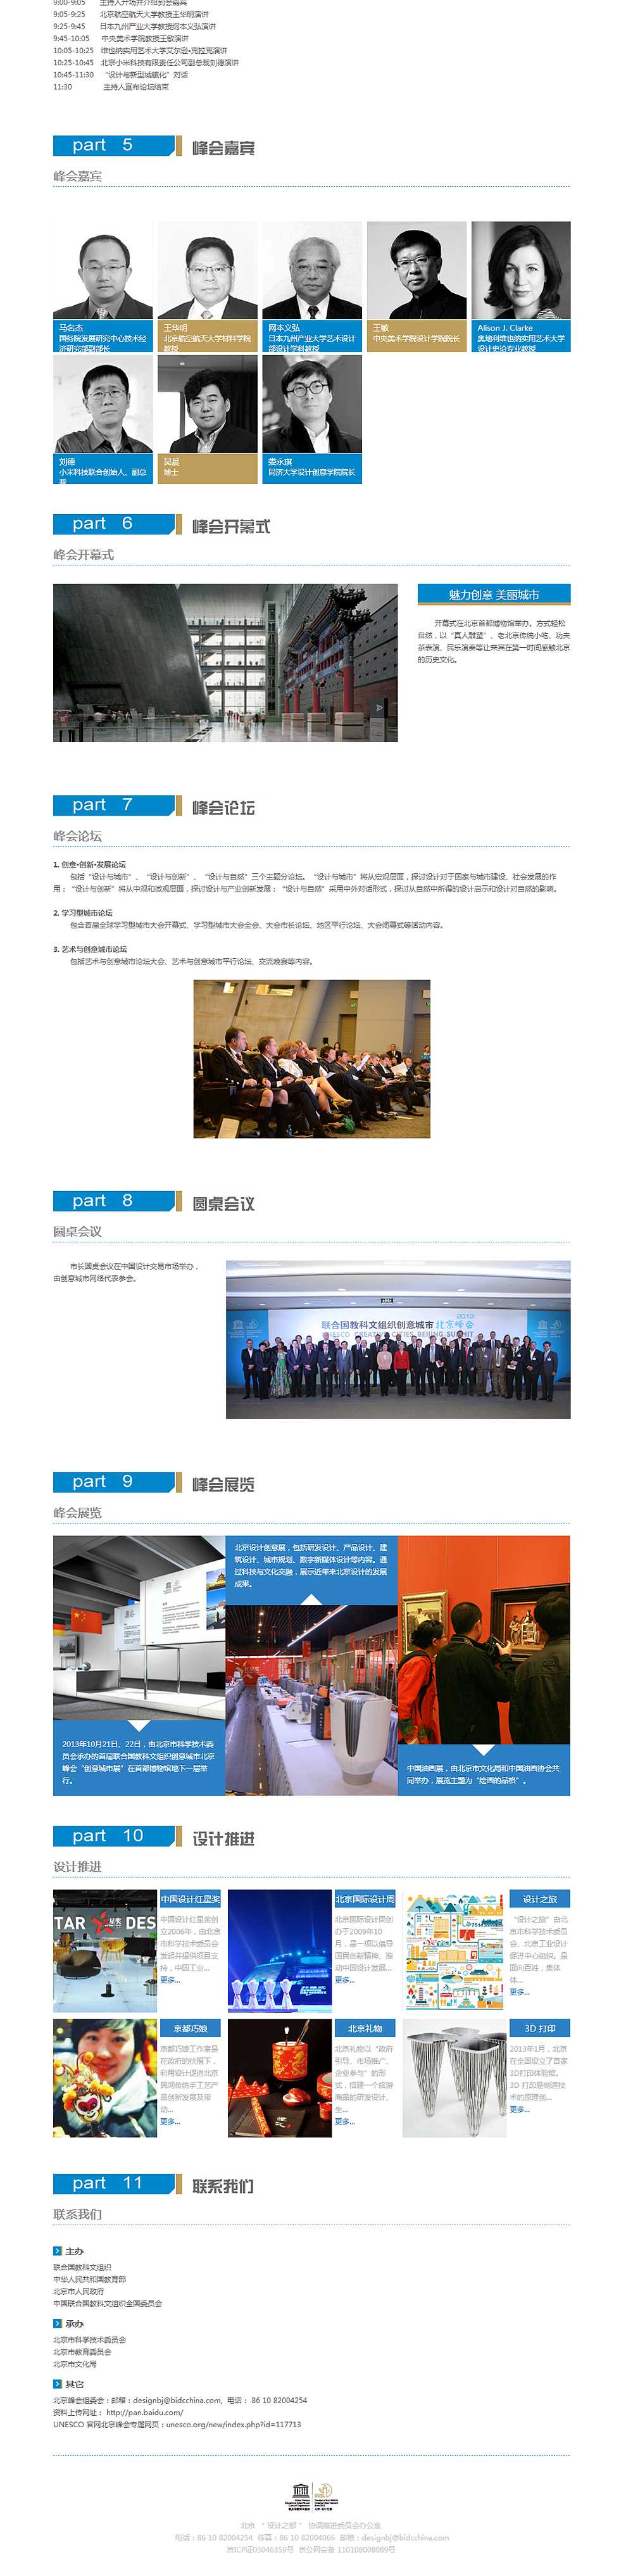 联合国教科文组织创意城市2013北京峰会